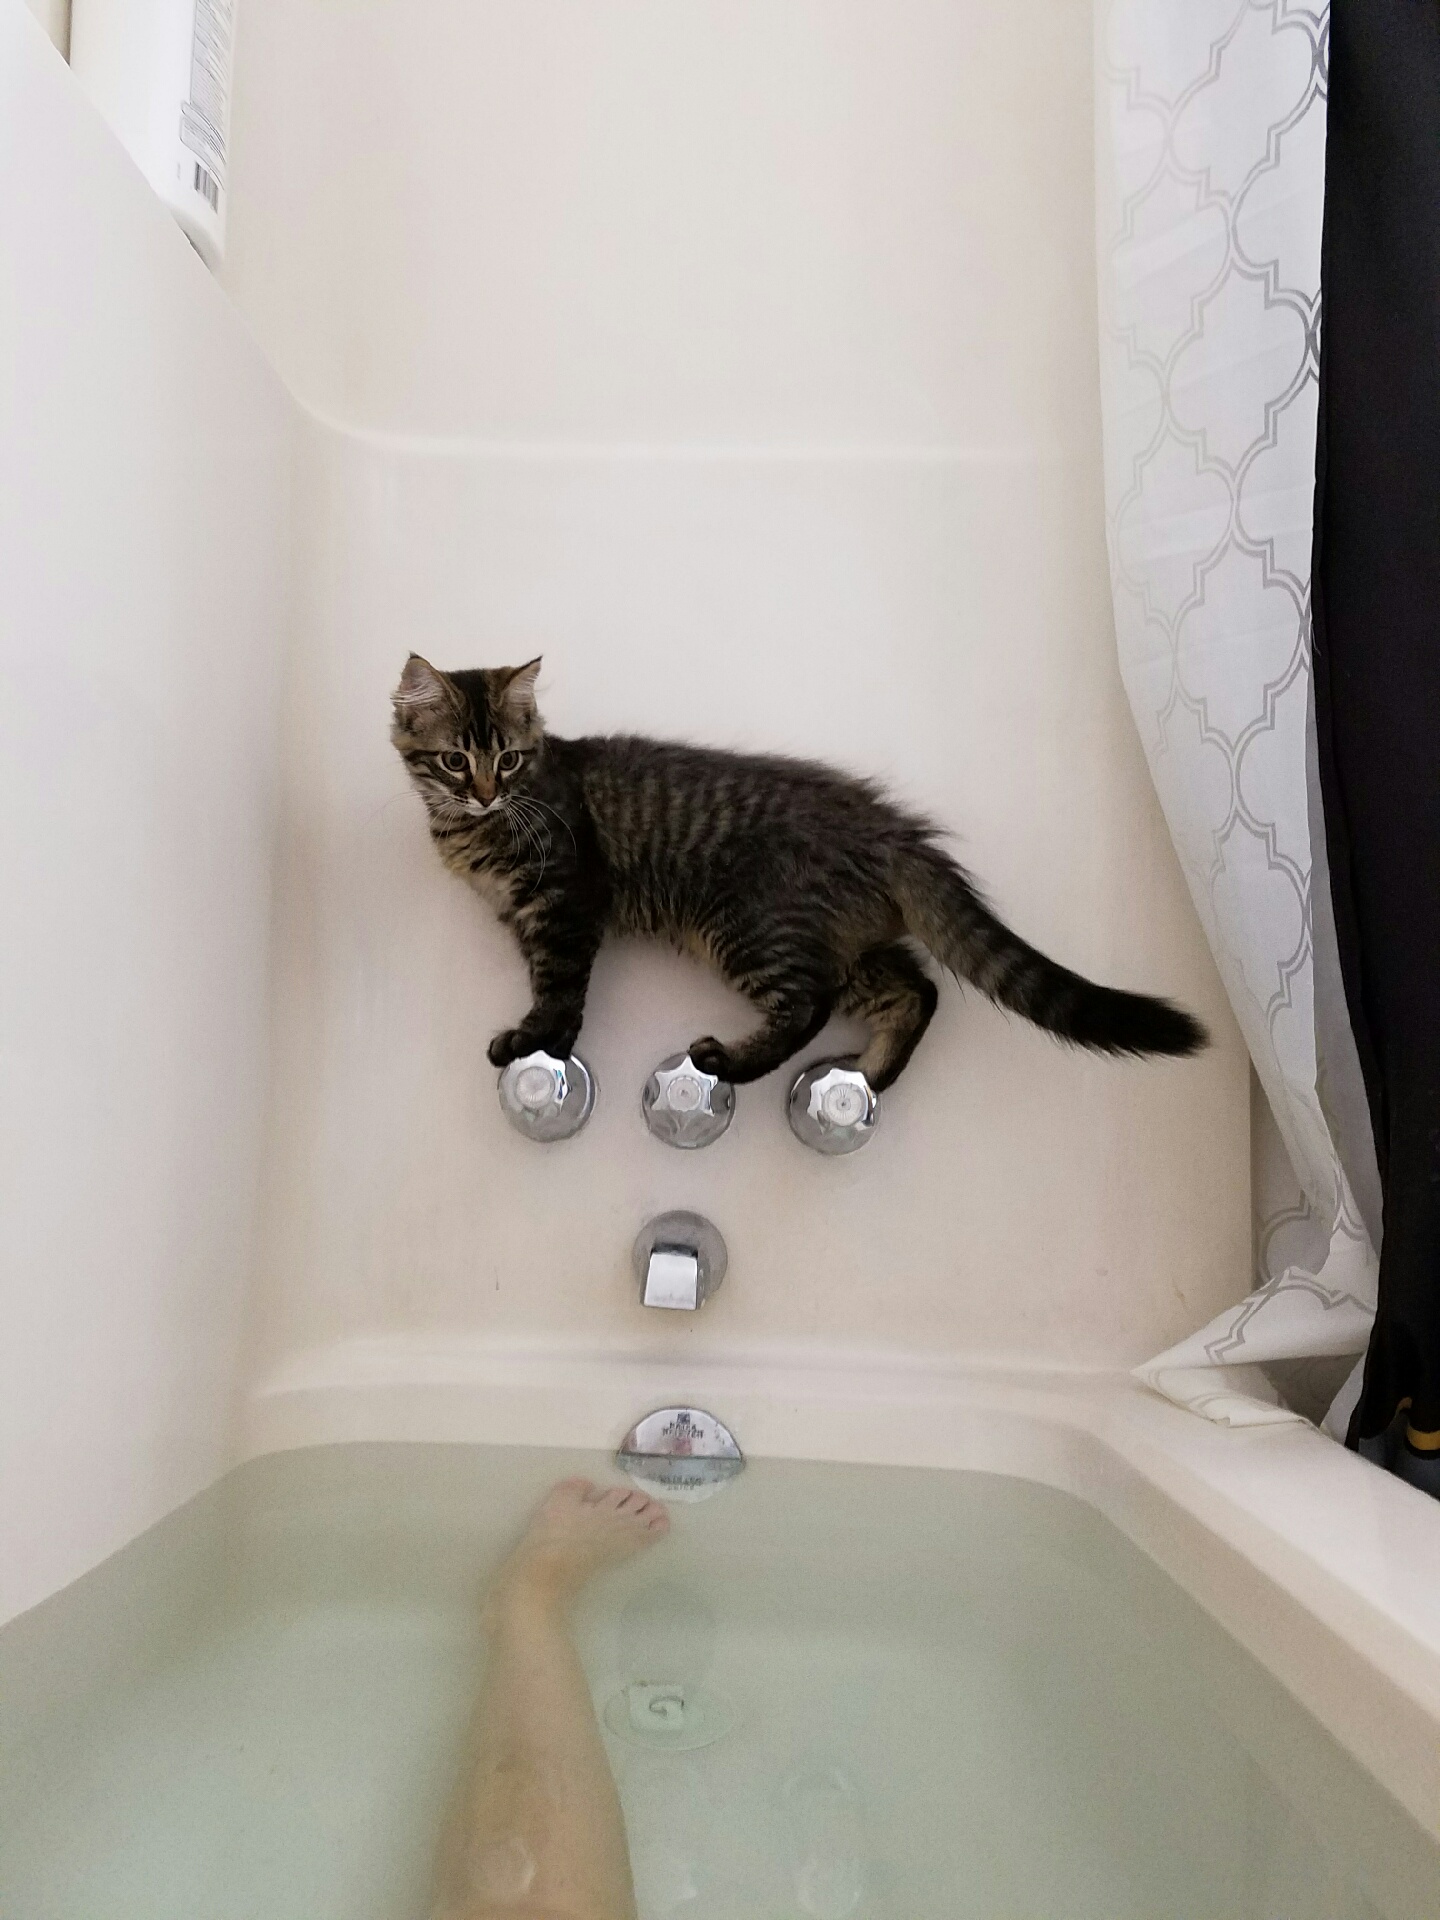 Kitten balances on bathtub knobs